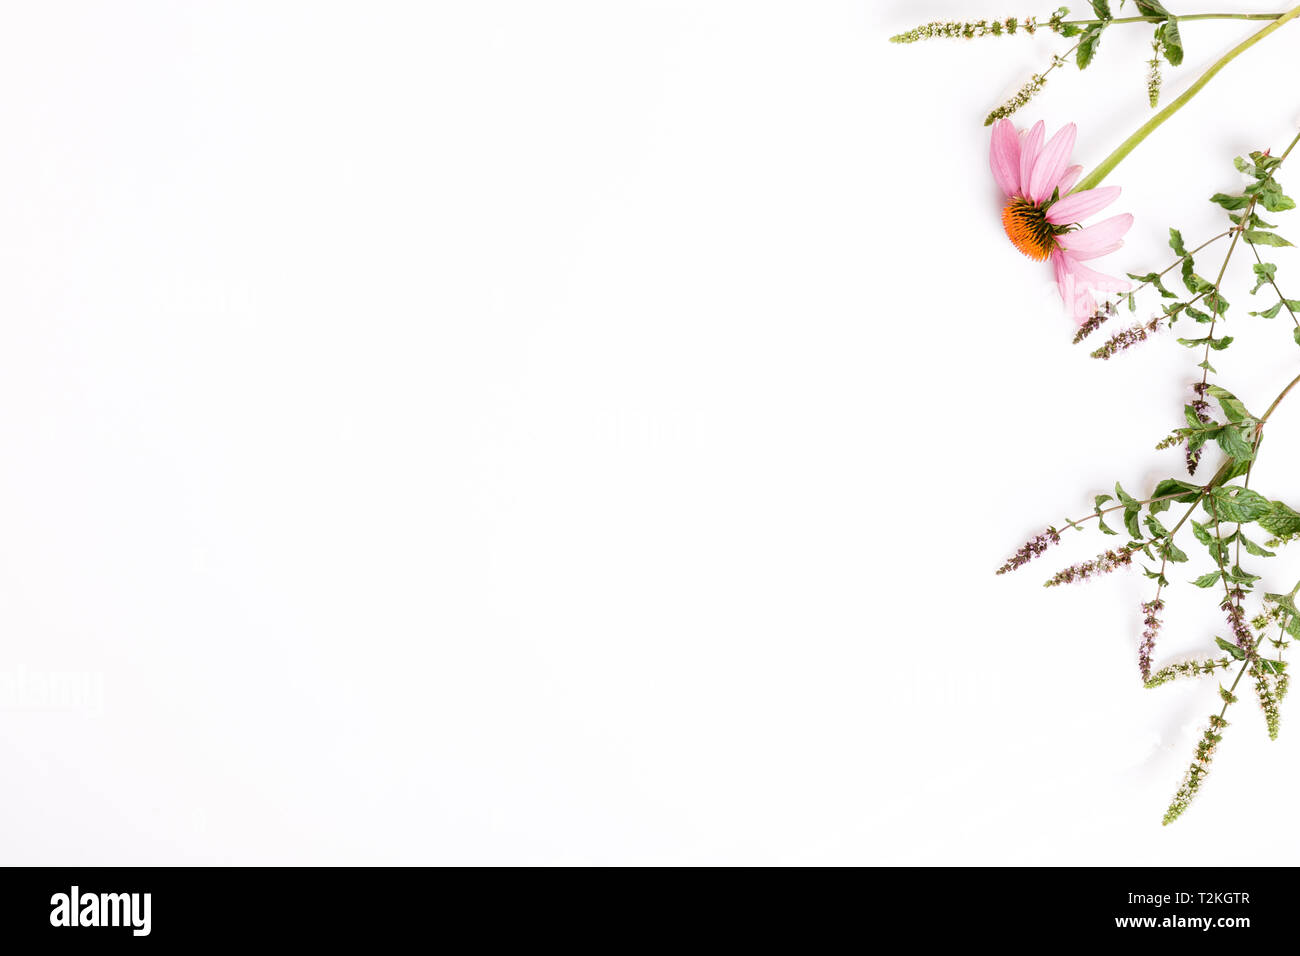 Echinacea, Schafgarbe, Heilpflanzen Hintergrund, Flach, Ansicht von oben Stockfoto